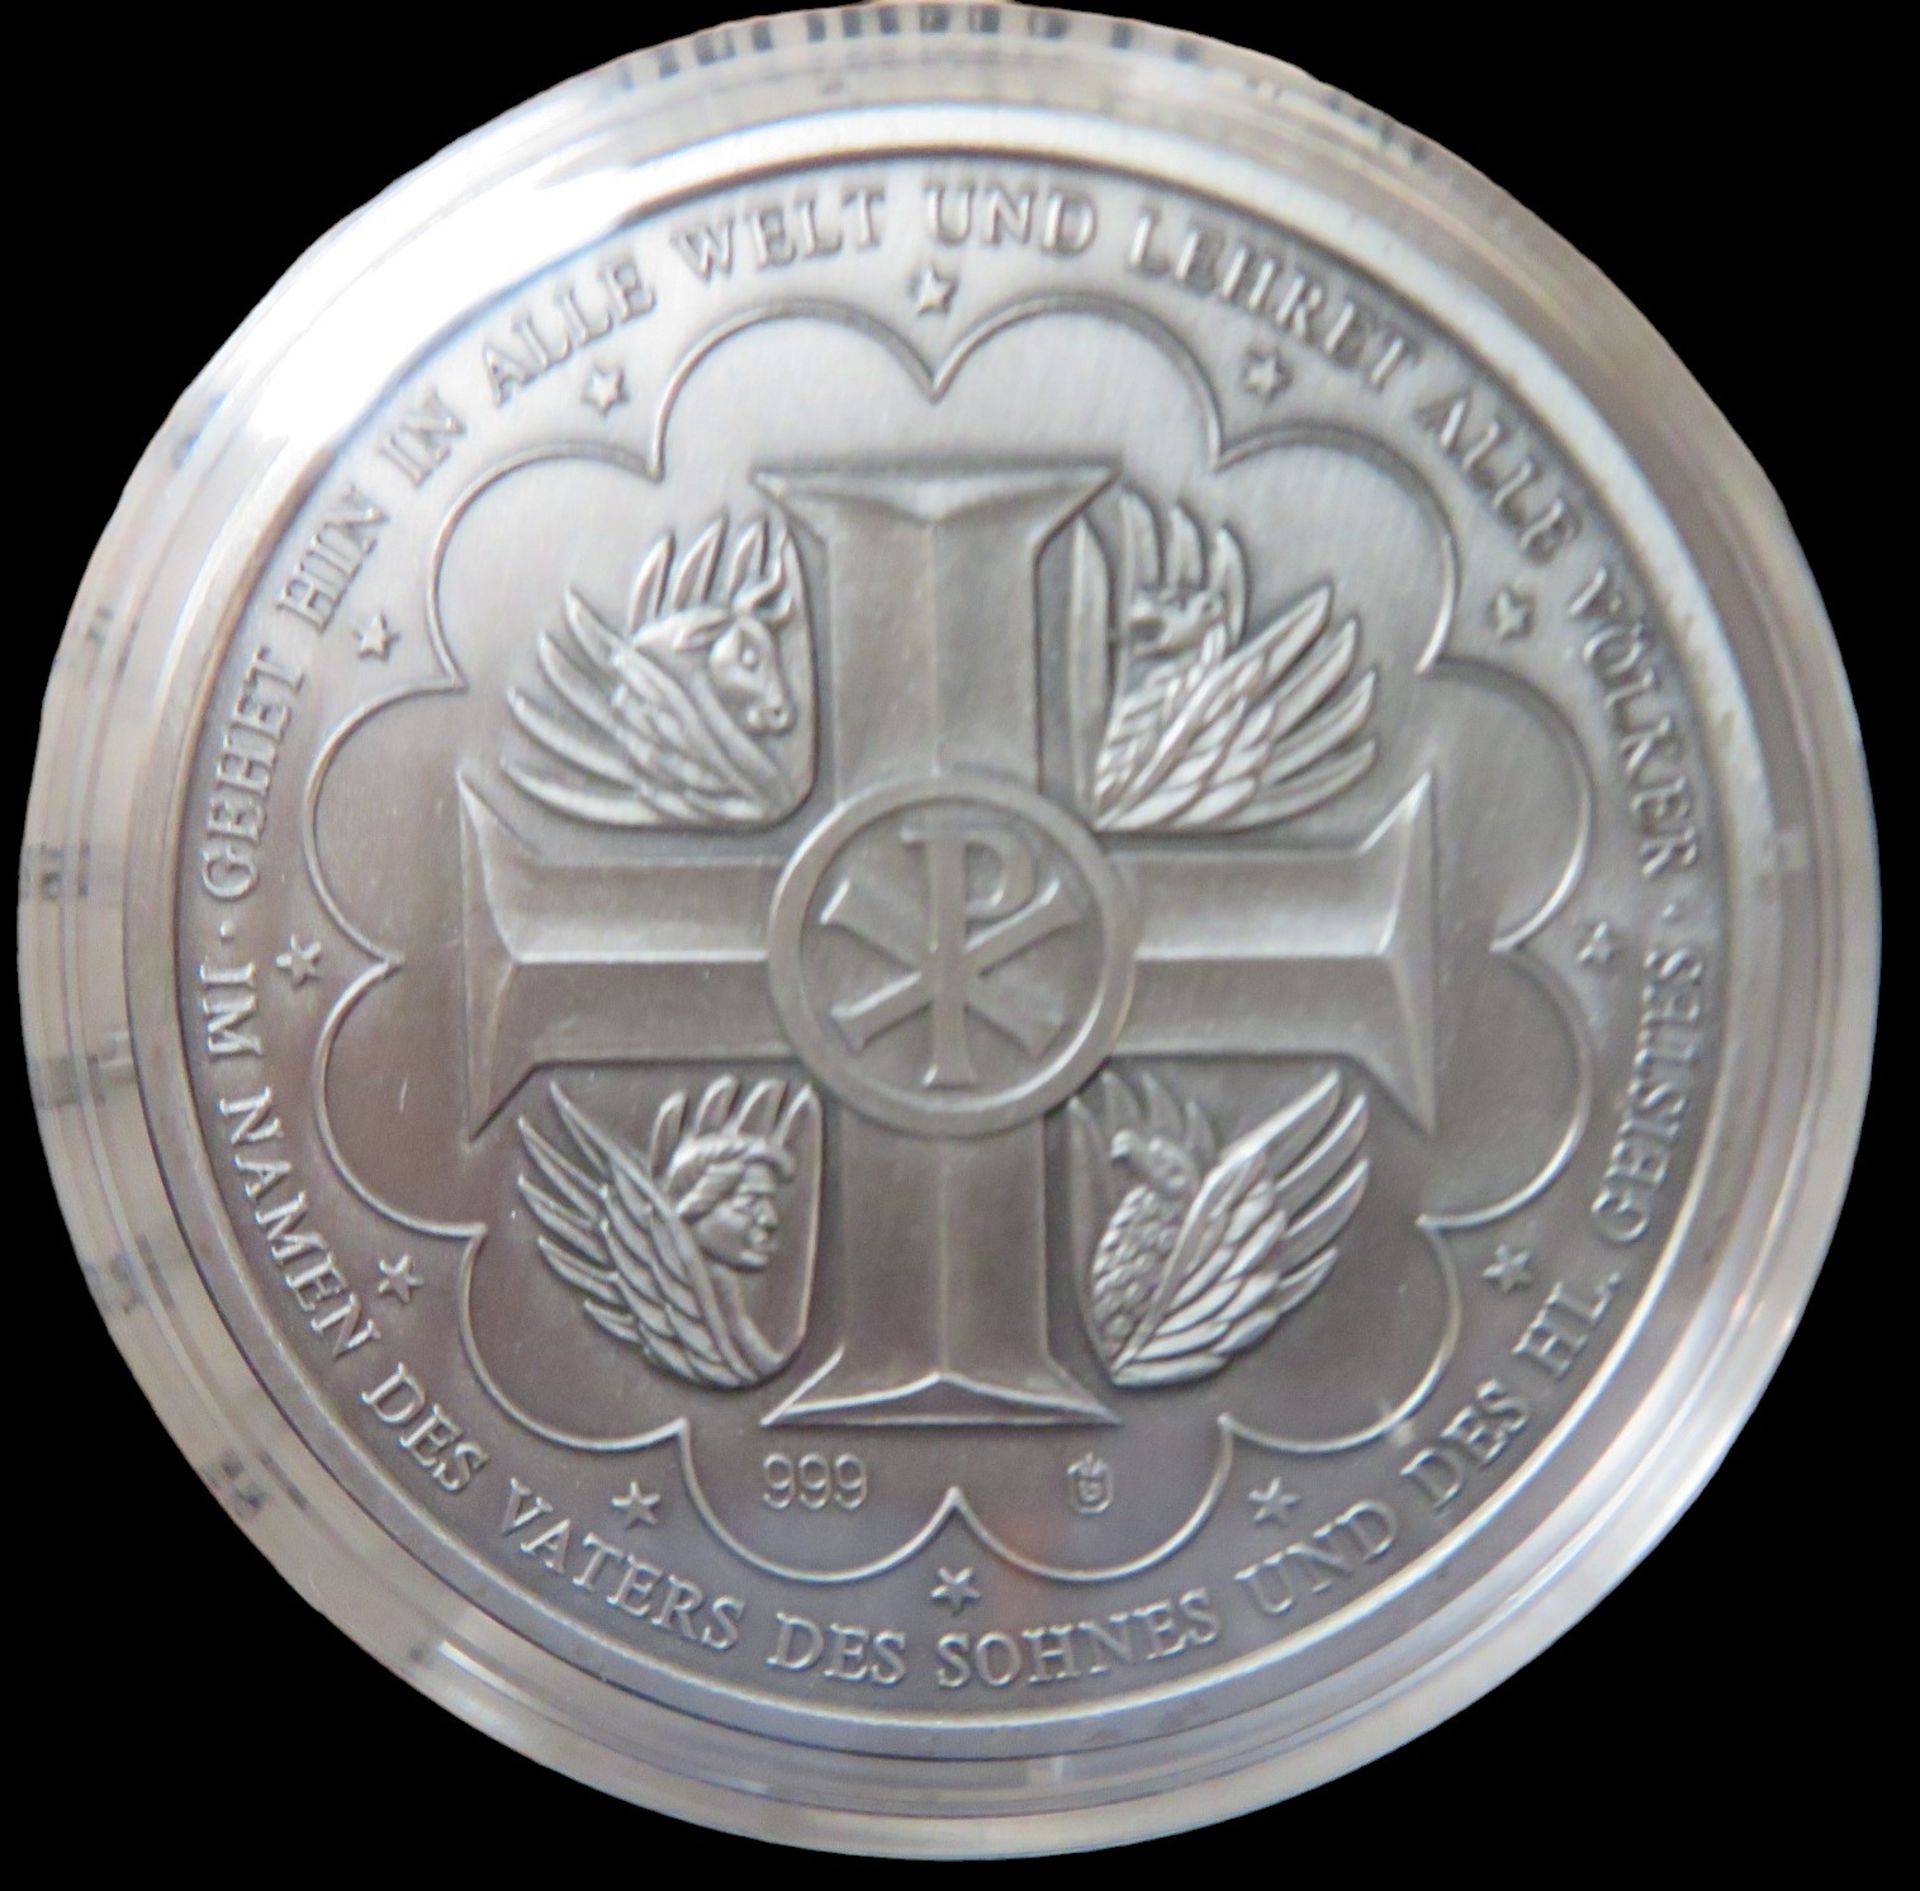 12 Silbermünzen, Geschichte des Christentums, 11 x je 20 g Feinsilber 999/000, diese zus. 220 g, 1 - Image 3 of 4